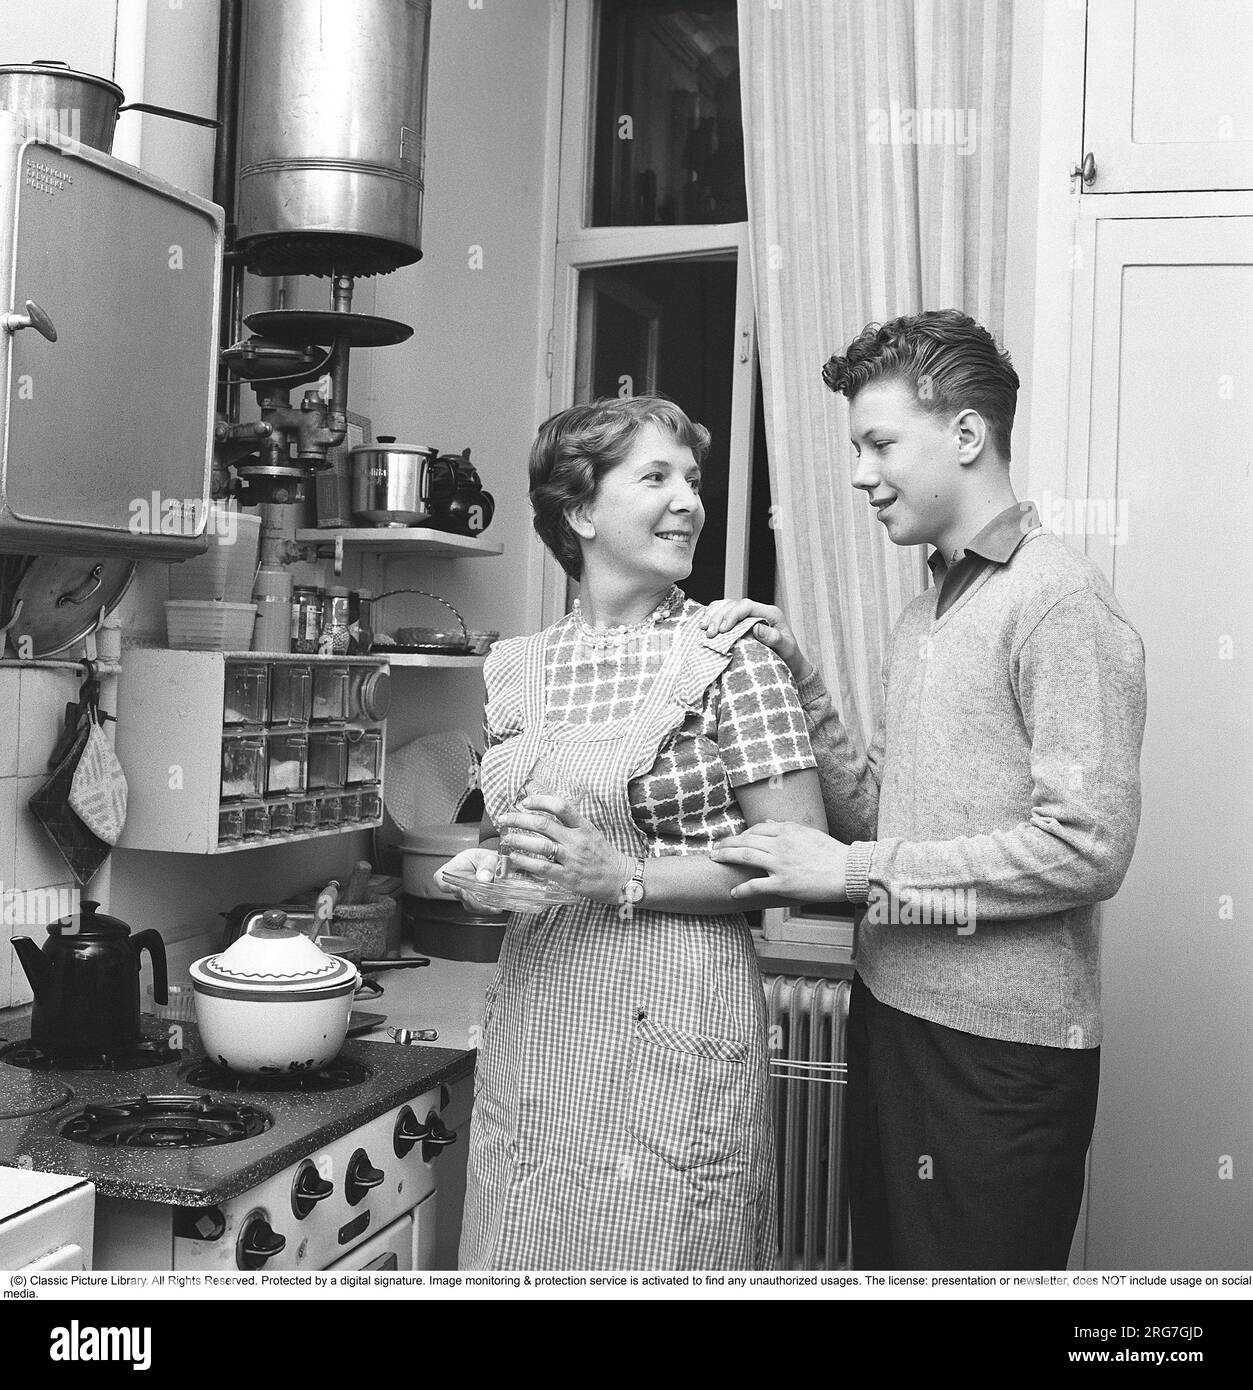 Cuisine dans les années 1960 Une mère avec son fils dans la cuisine. Une petite cuisine avec une cuisinière à gaz, un banc de cuisine plus petit où il y a un mortier et une boîte à pain. Une grille à épices est accrochée au mur. Un chauffe-eau est accroché au sommet du mur. Suède 1962. Kristoffersson réf CV90-10 Banque D'Images